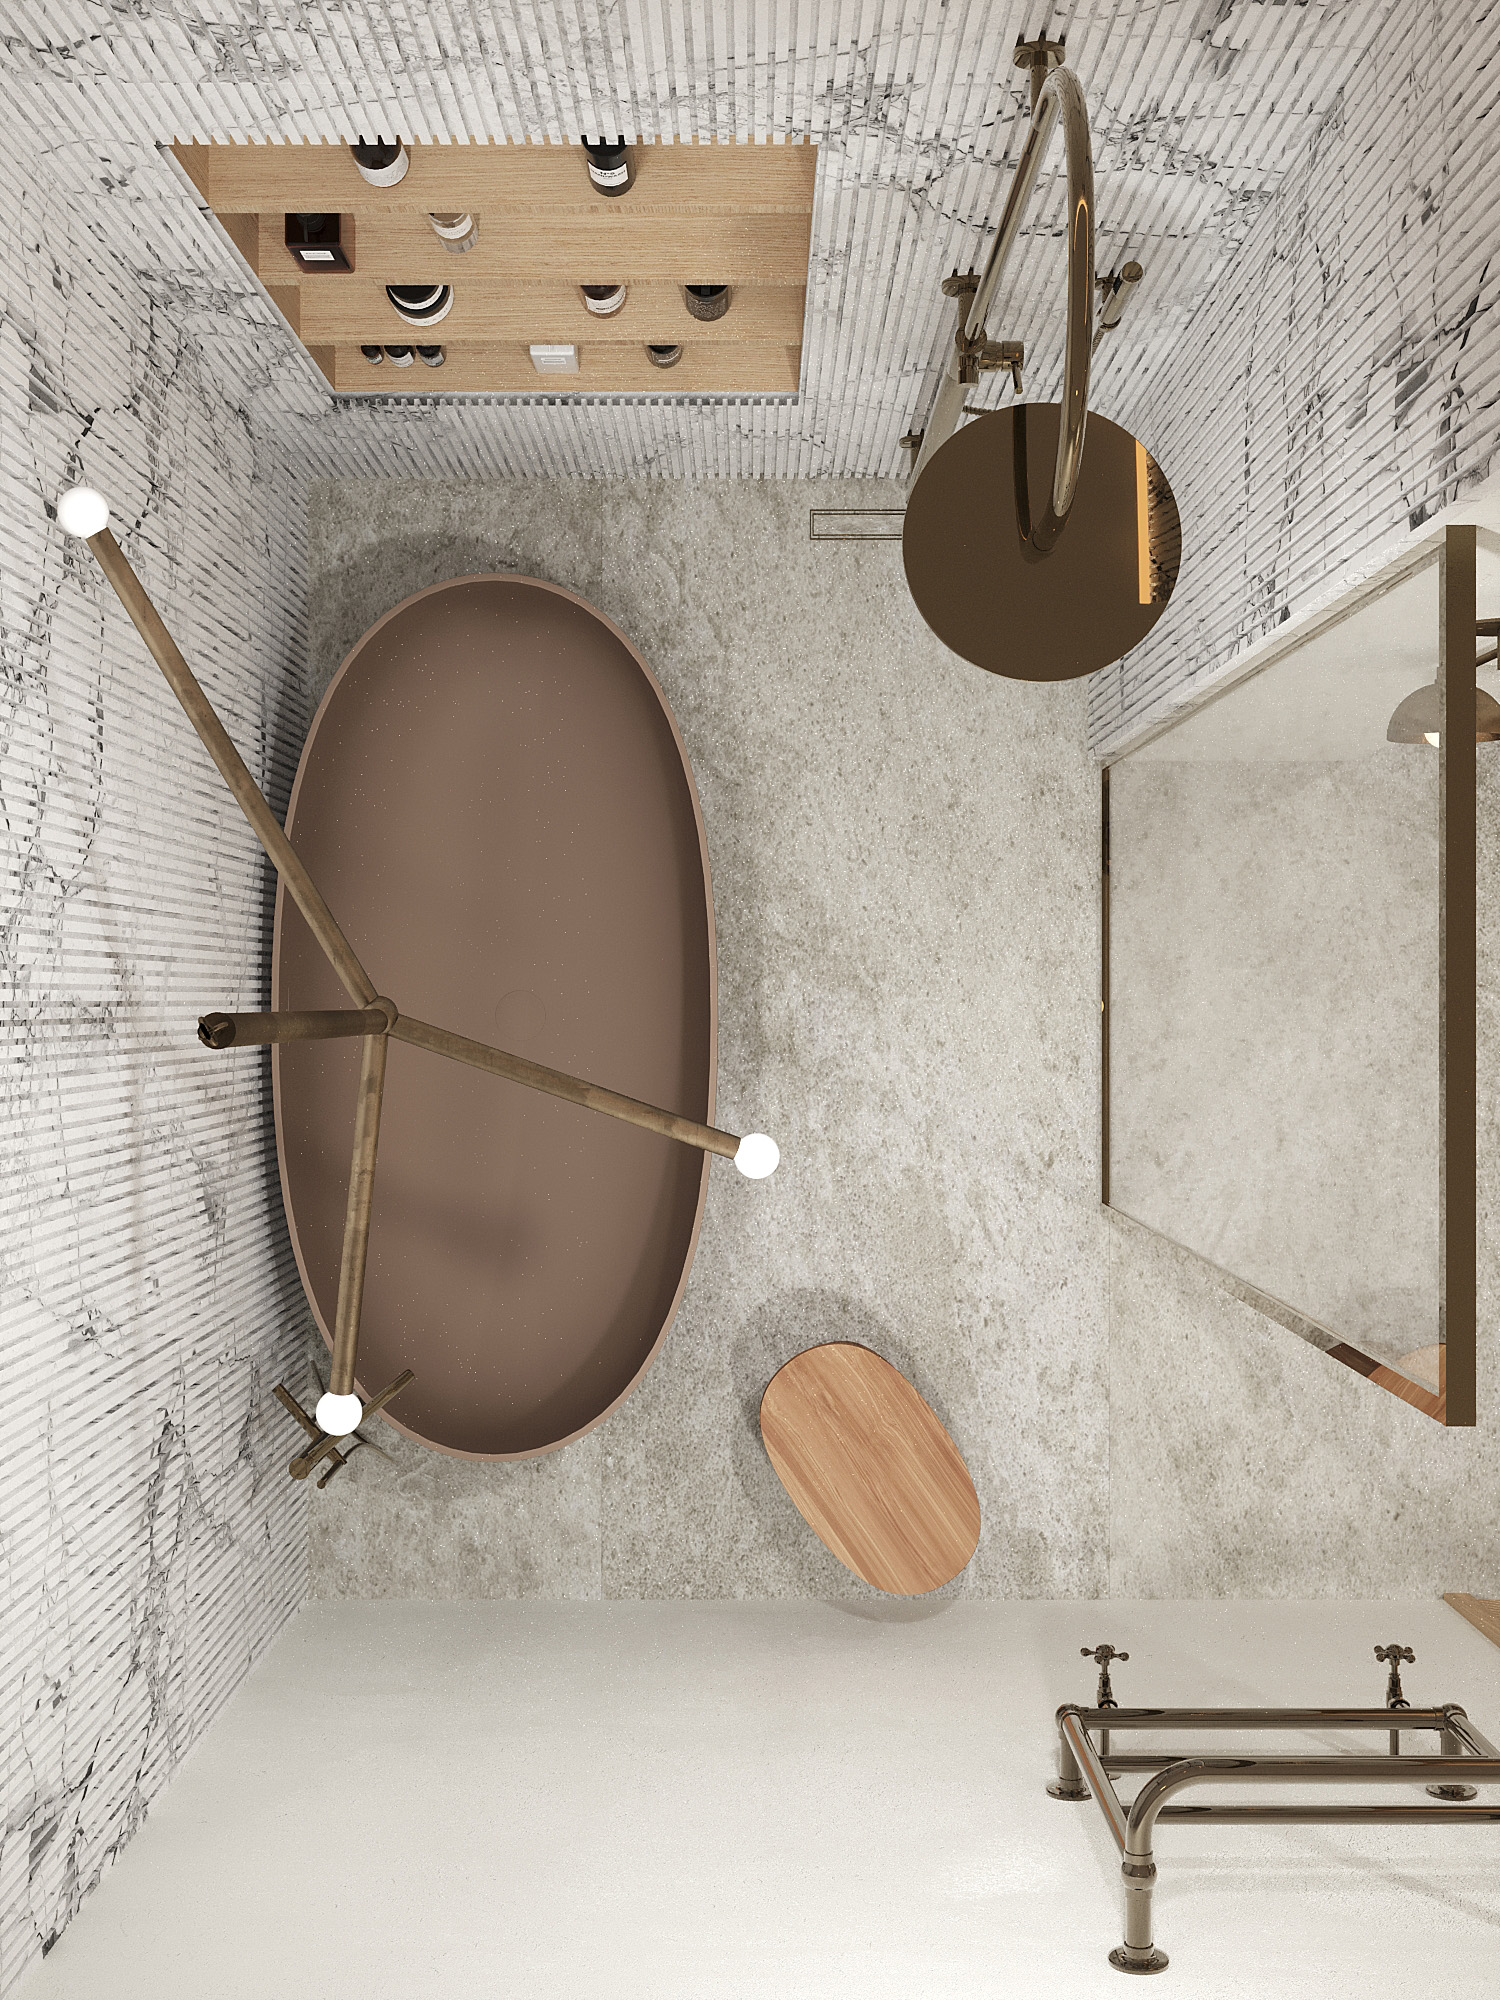 Дизайн-проект интерьера ванной комнаты в ЖК Настоящее, концепция, визуализации